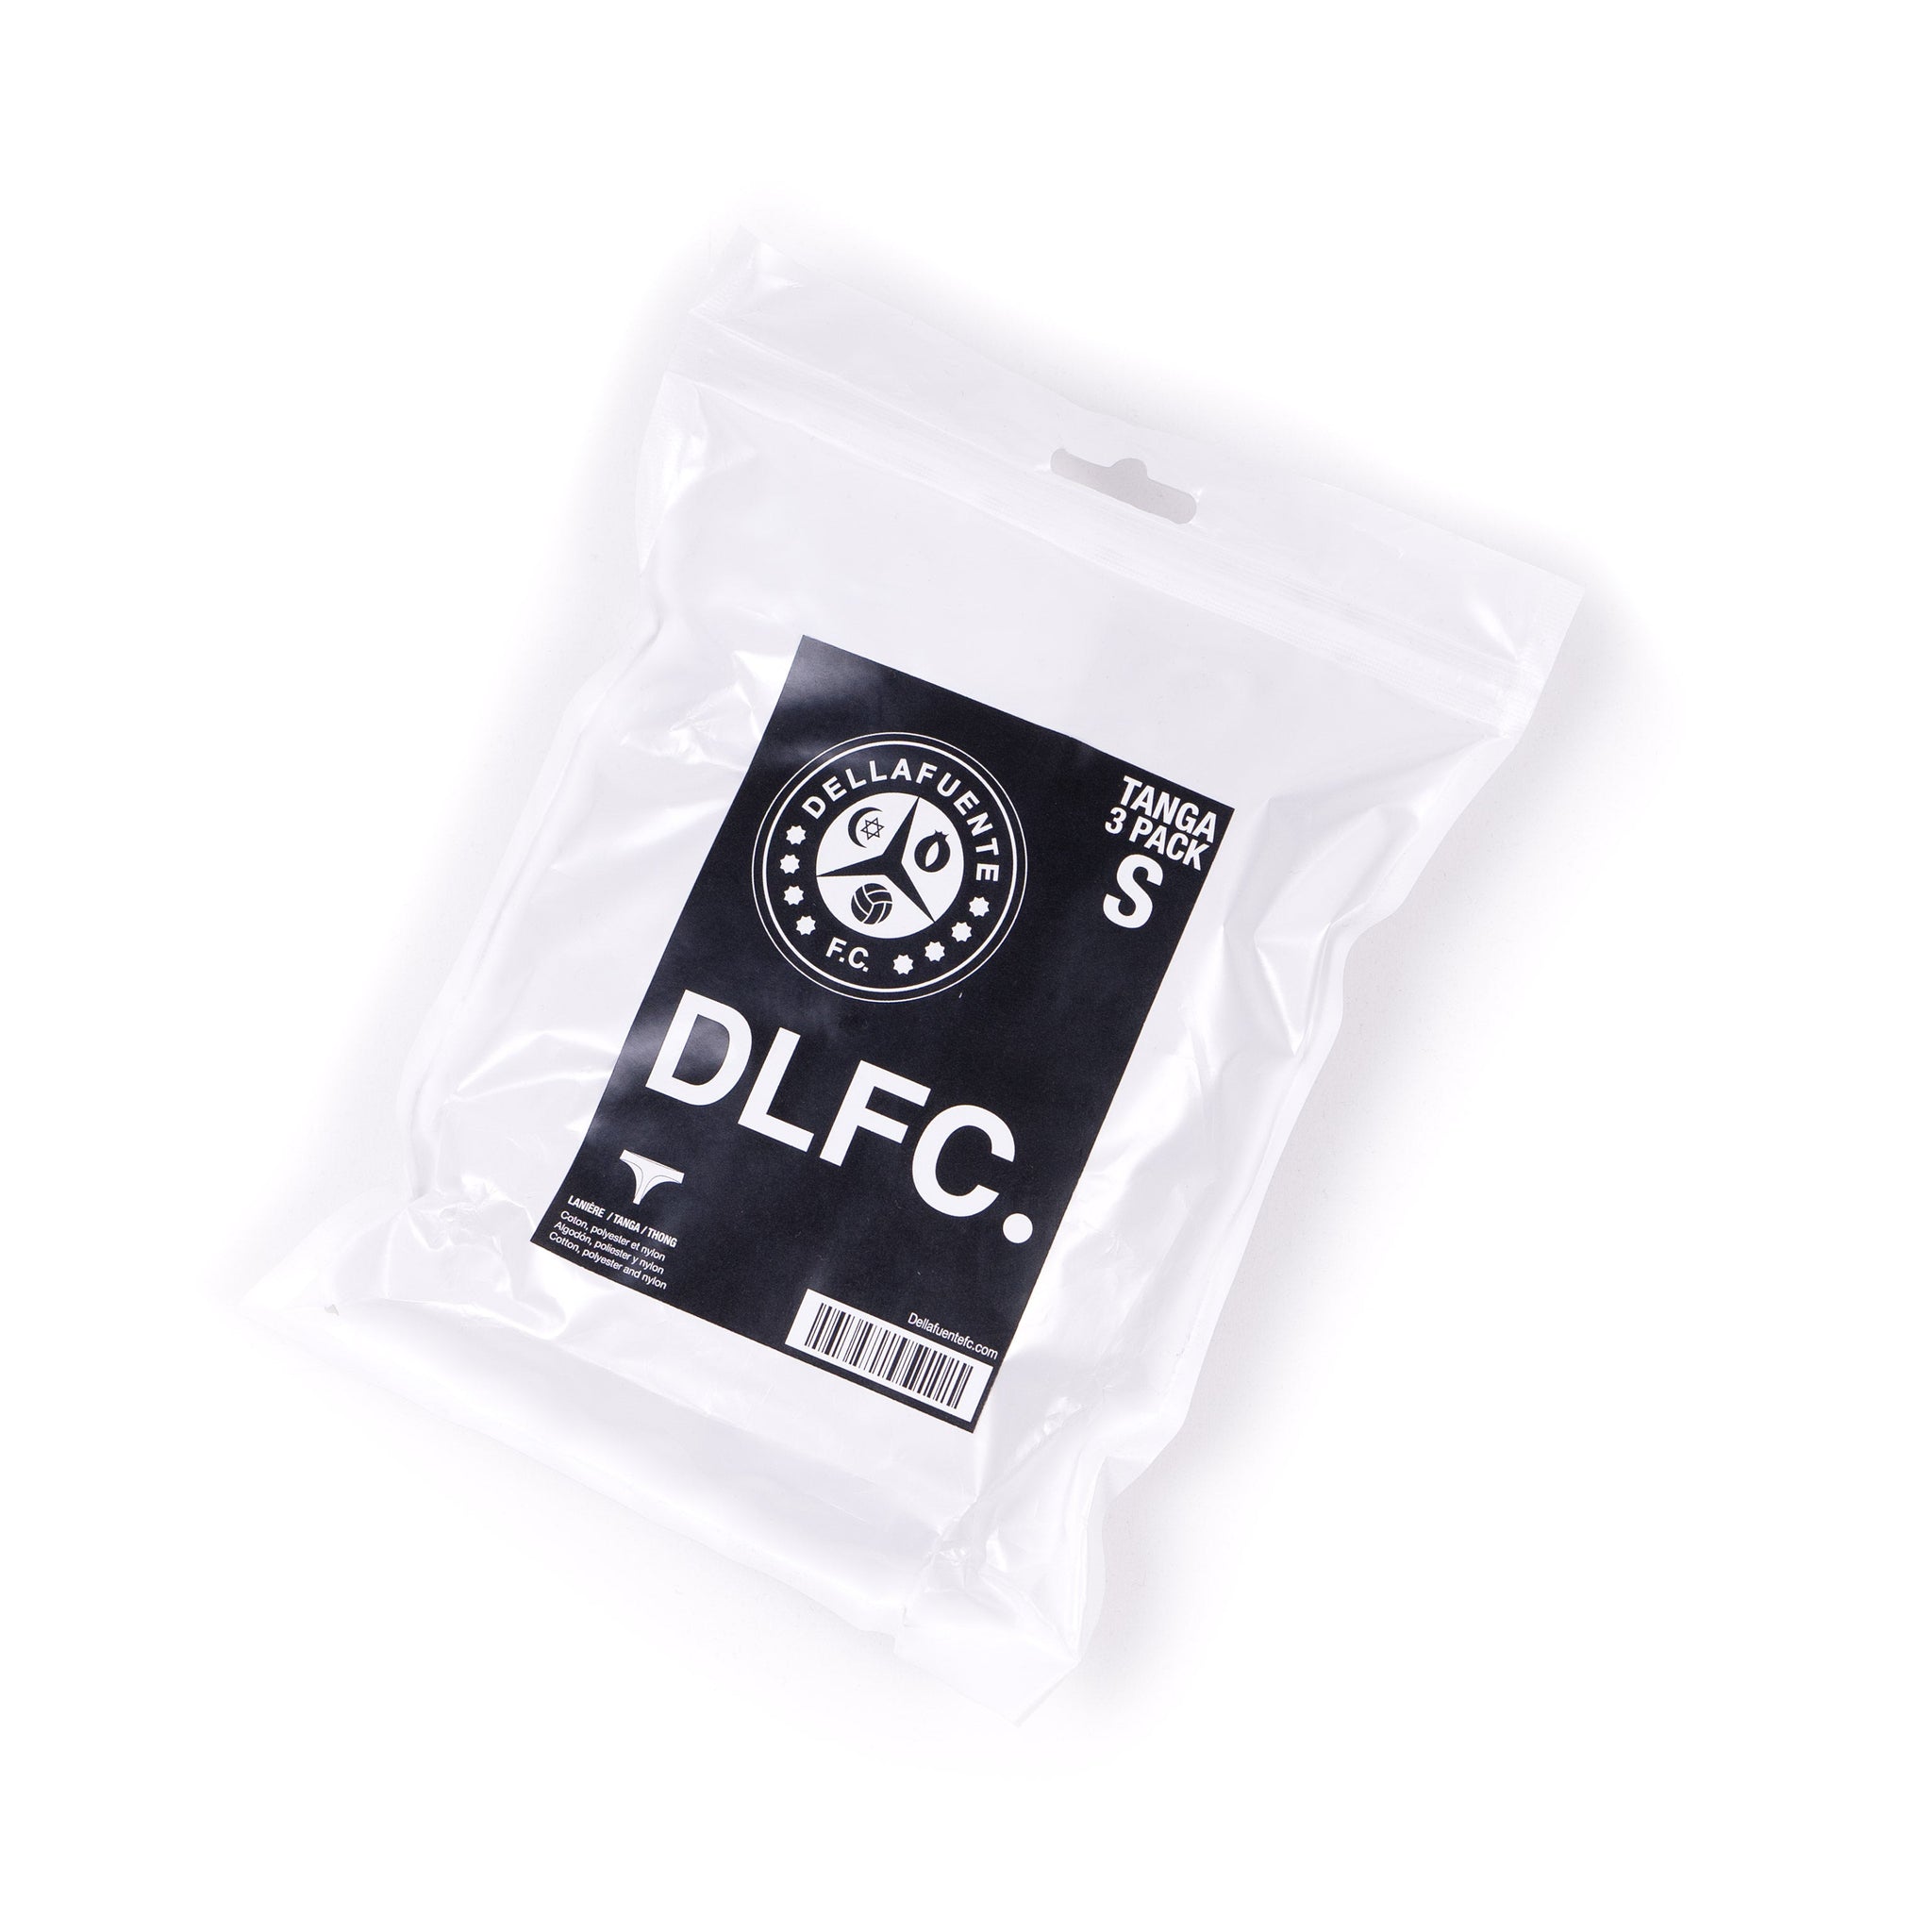 Pack de Tangas - DLFC Basics - Dellafuente F.C.